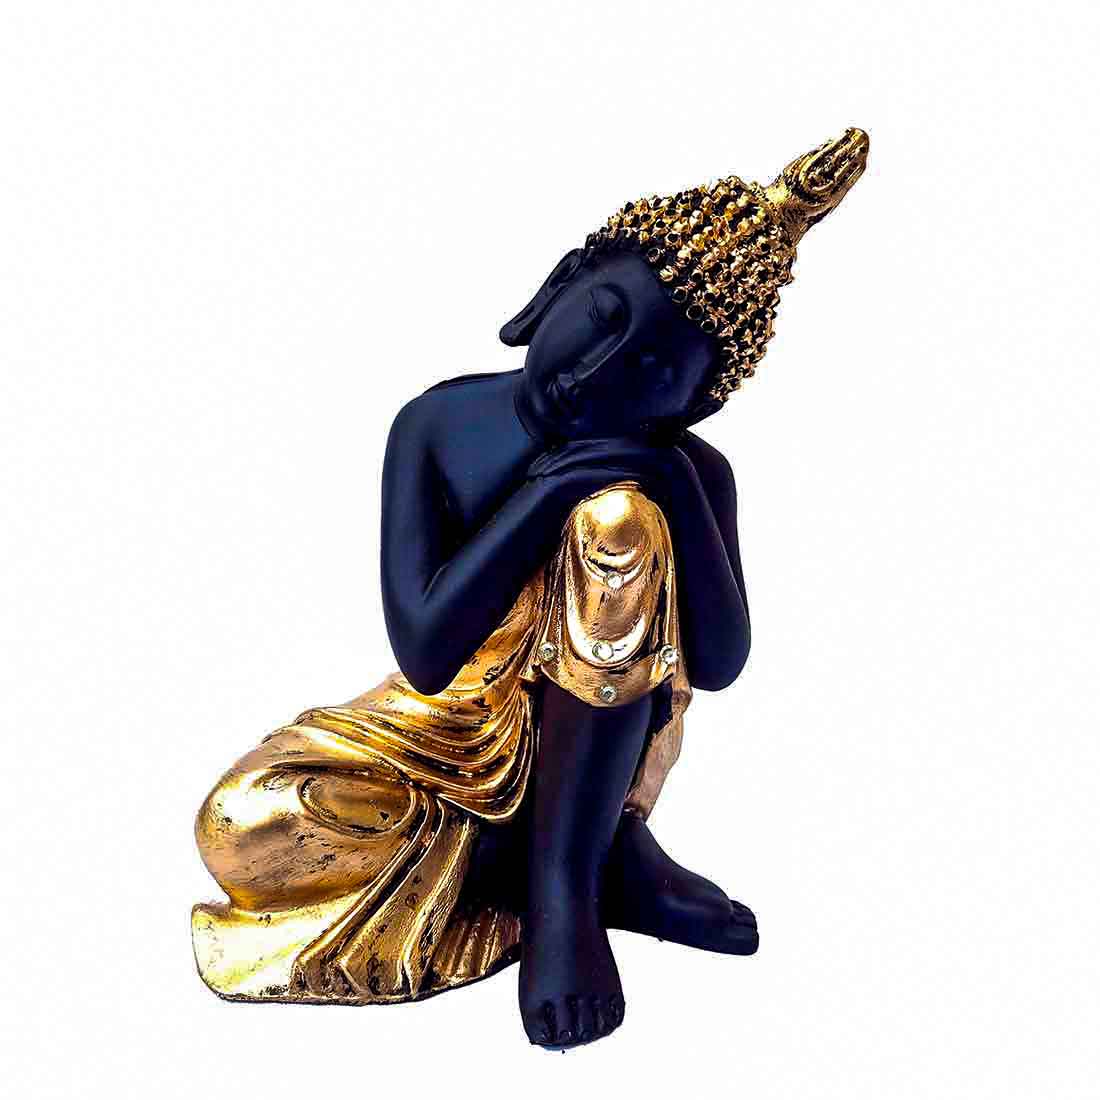 Golden Relaxing Buddha Statue - for Home Decor & Spiritual Living - 8 Inch - ApkaMart